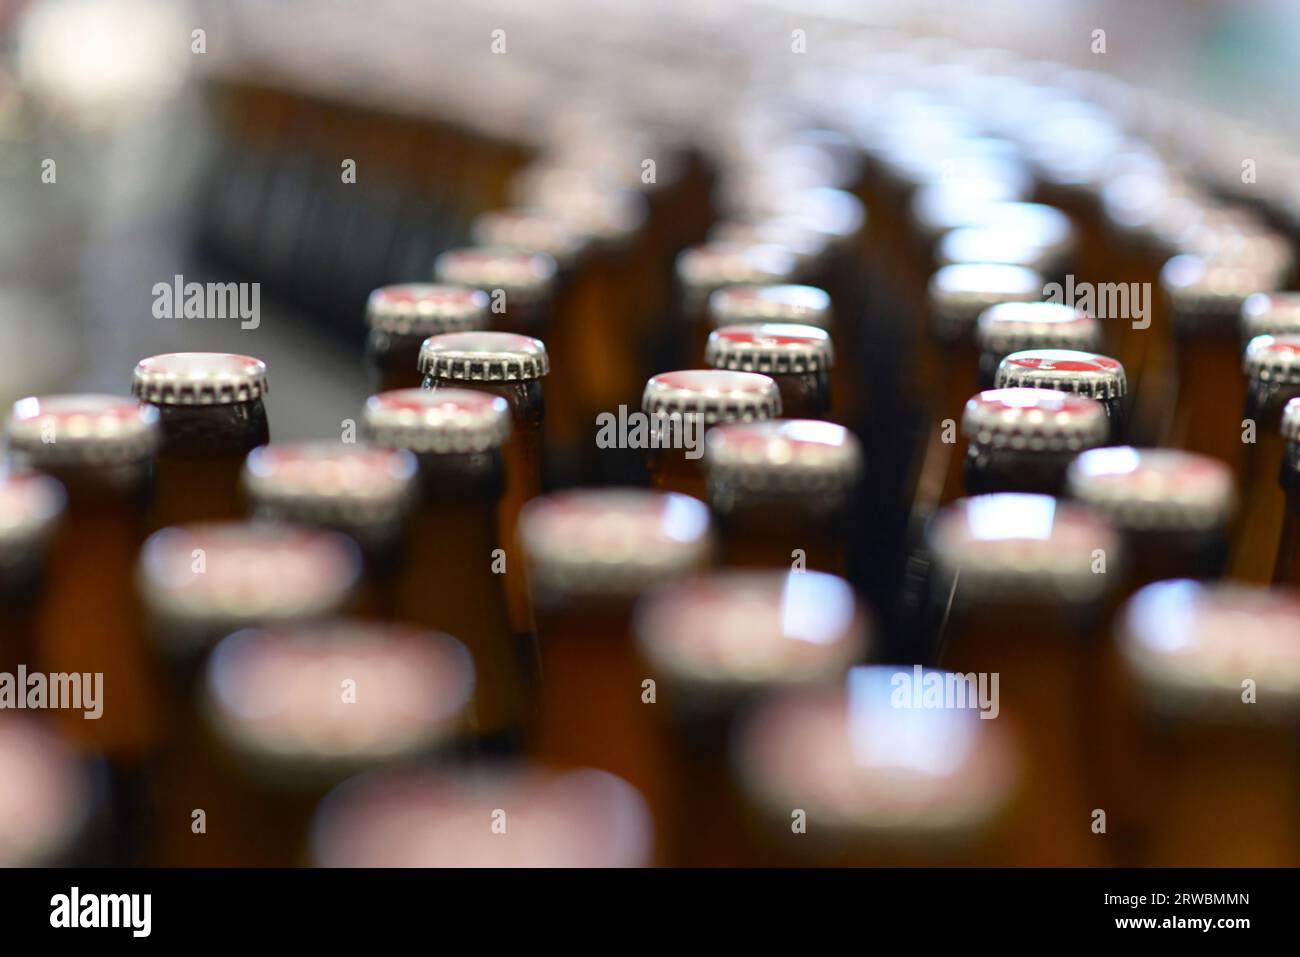 Bier Flaschen auf dem Fließband in einer modernen Brauerei - Anlagen in der Lebensmittelindustrie Stockfoto